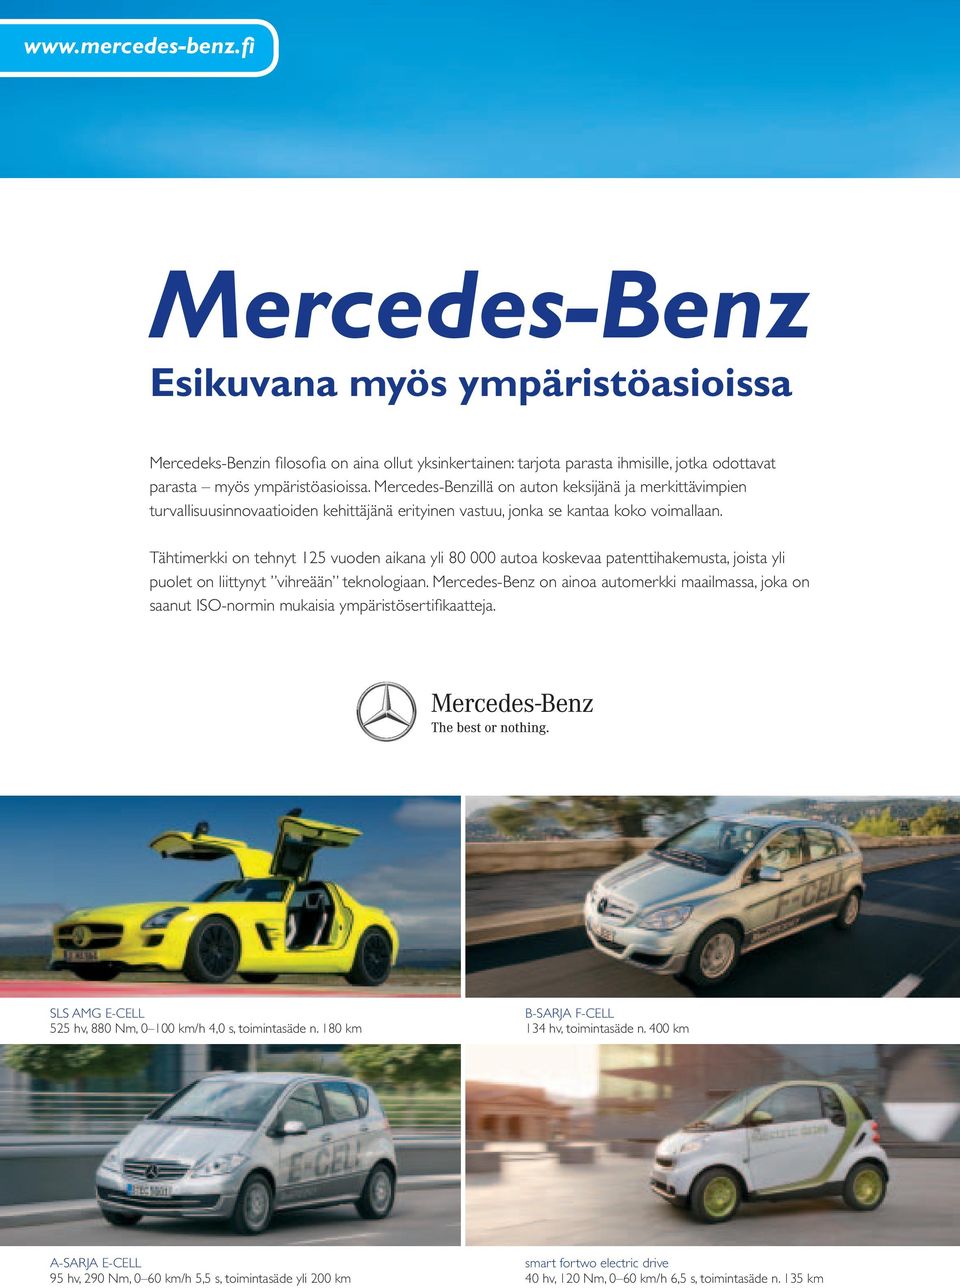 Mercedes-Benzillä on auton keksijänä ja merkittävimpien turvallisuusinnovaatioiden kehittäjänä erityinen vastuu, jonka se kantaa koko voimallaan.